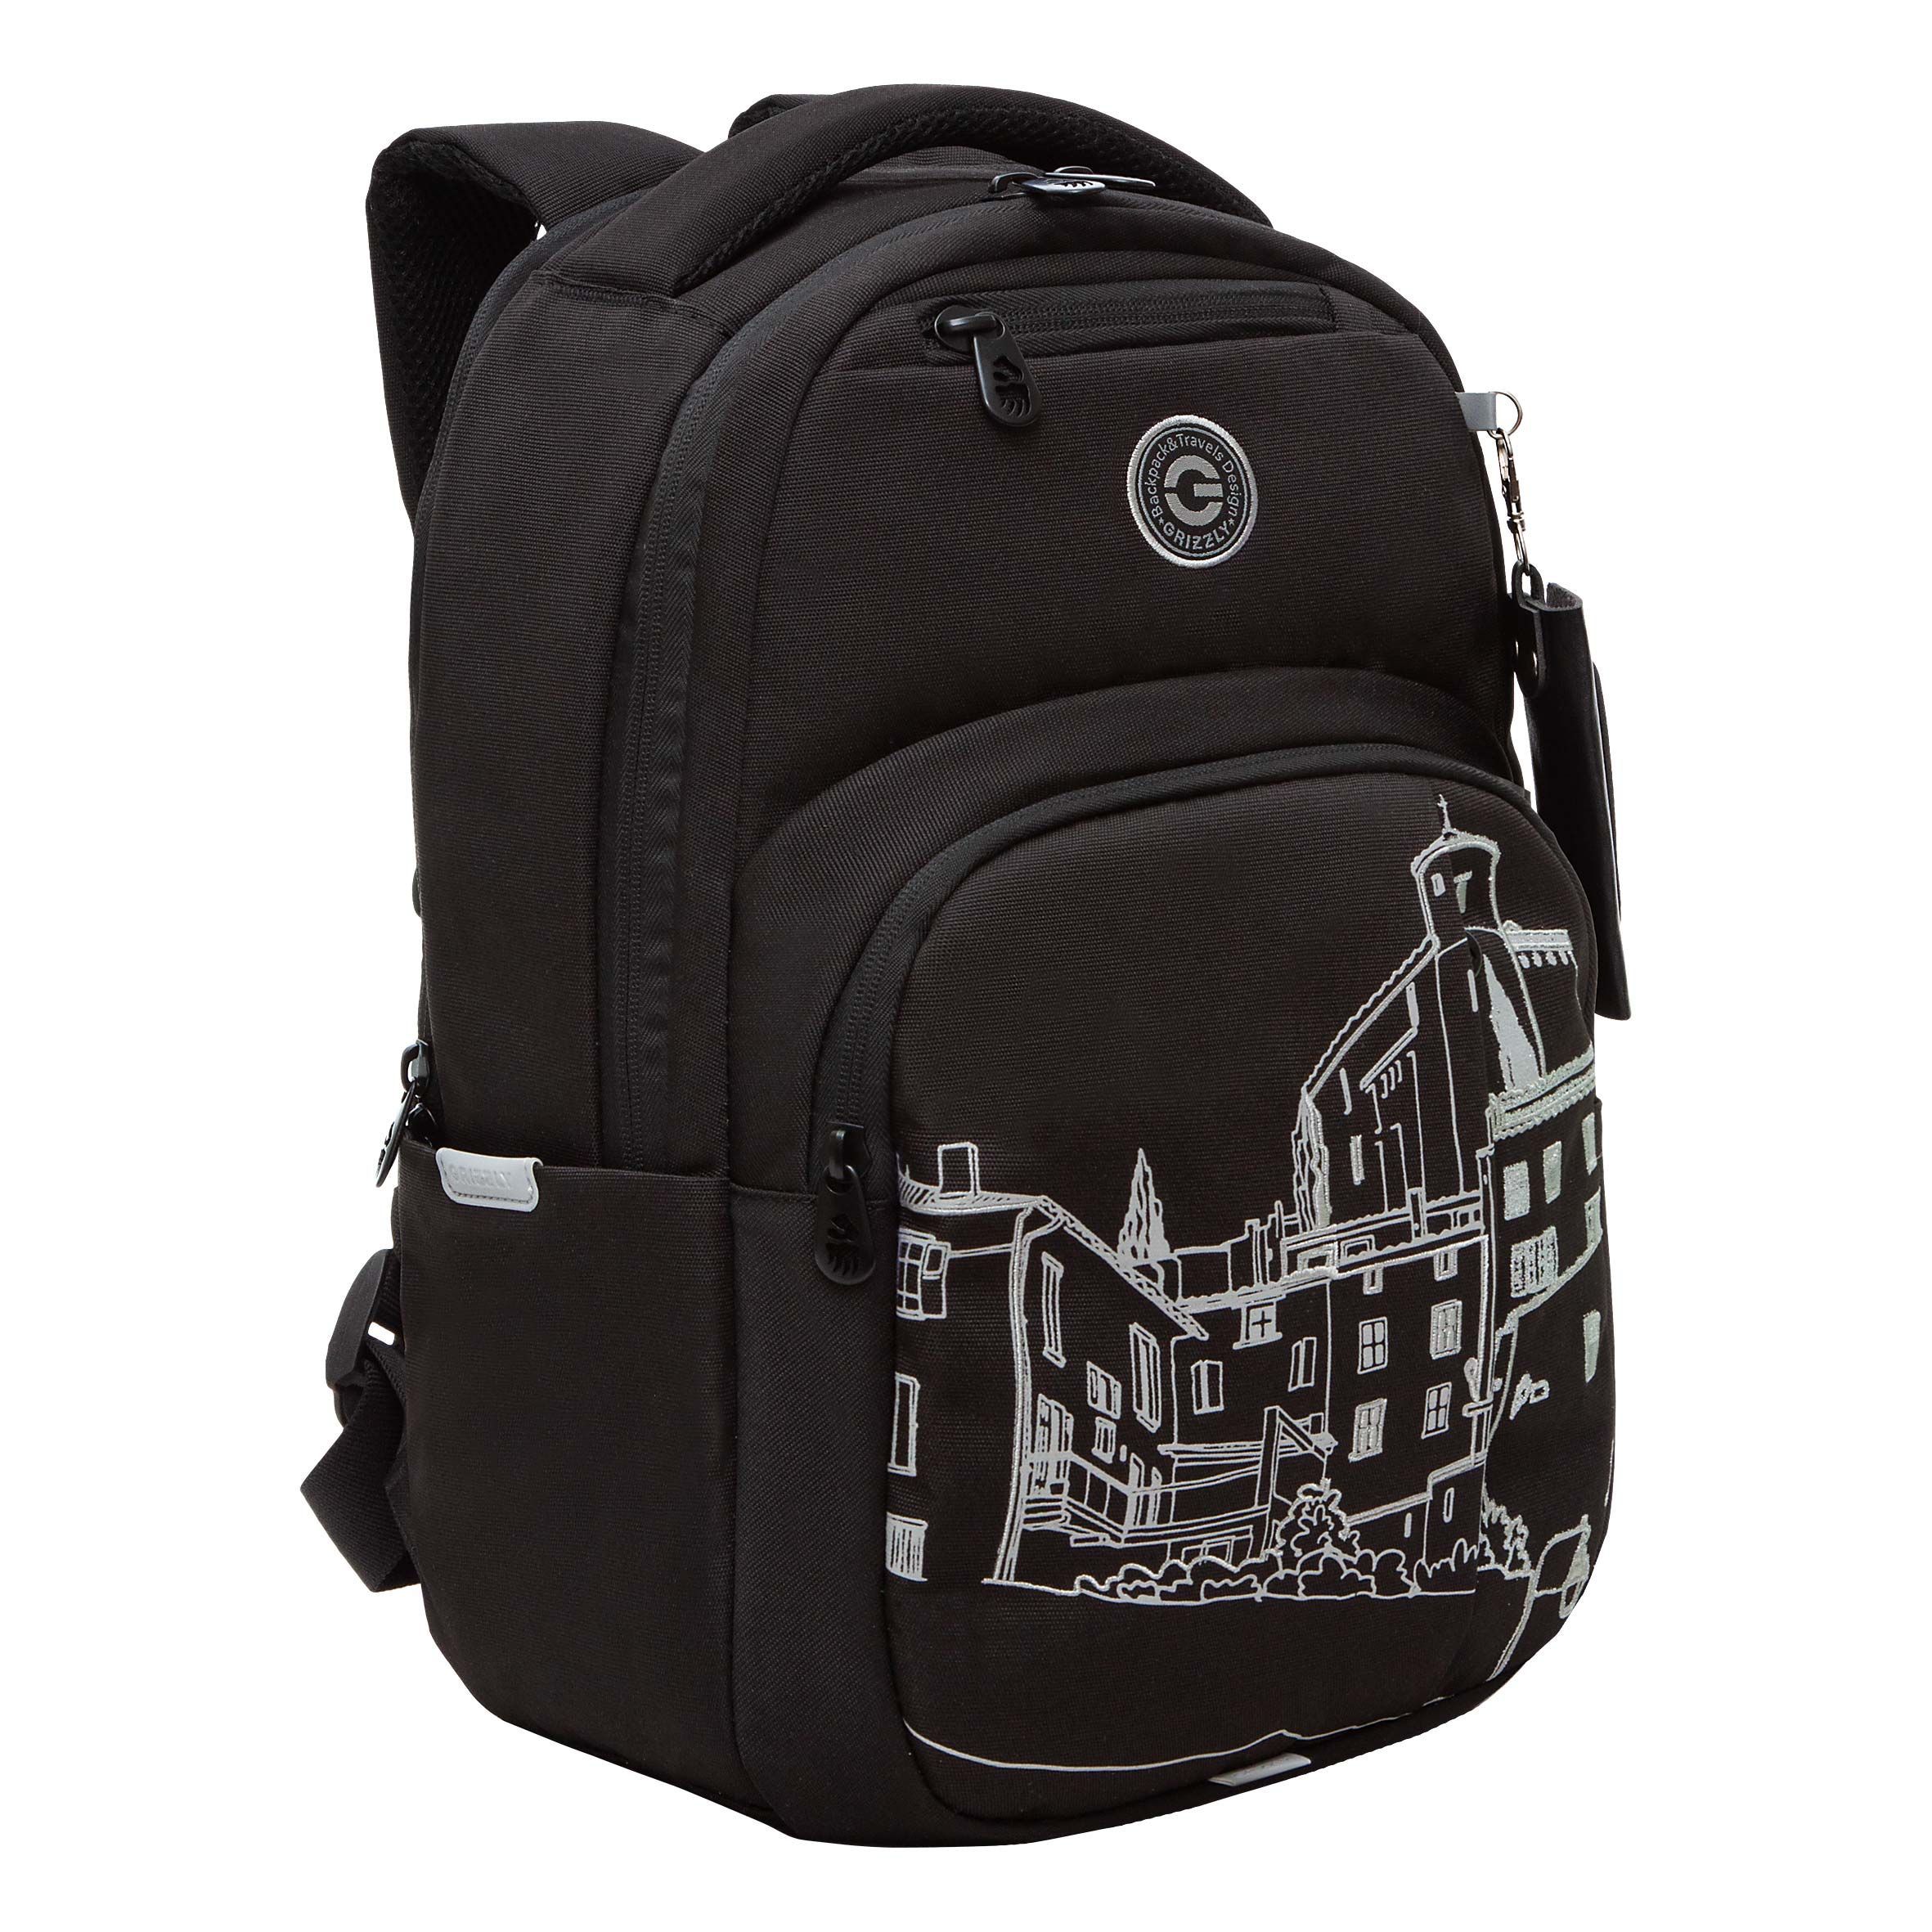 Рюкзак GRIZZLY RD-341-3 стильный городской с отделением для ноутбука 13 женский черный рюкзак женский городской textura